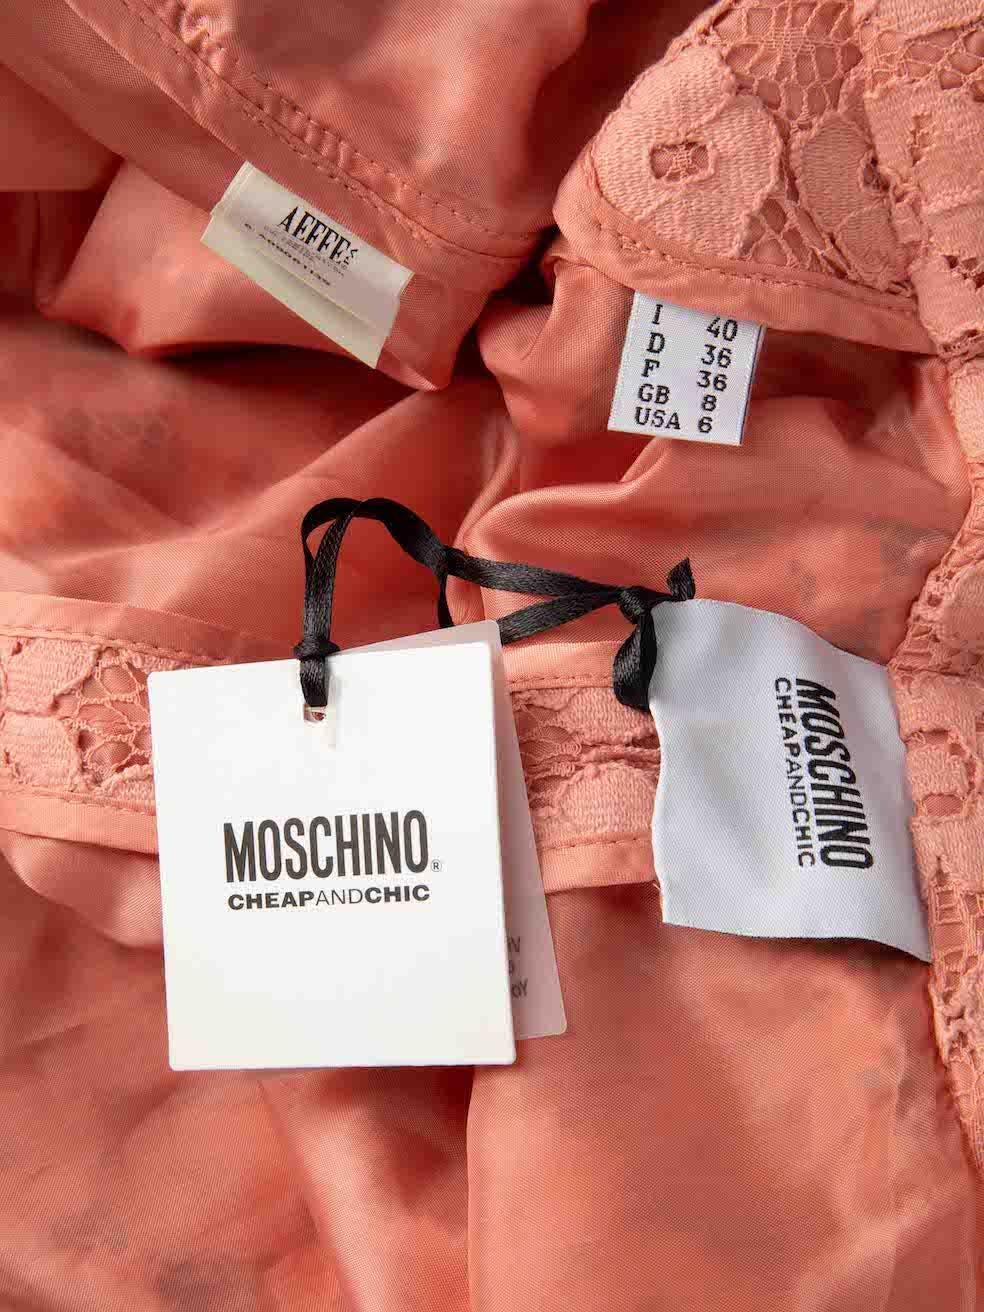 Moschino Cheap and Chic Manteau mi-long en dentelle rose Taille S Pour femmes en vente